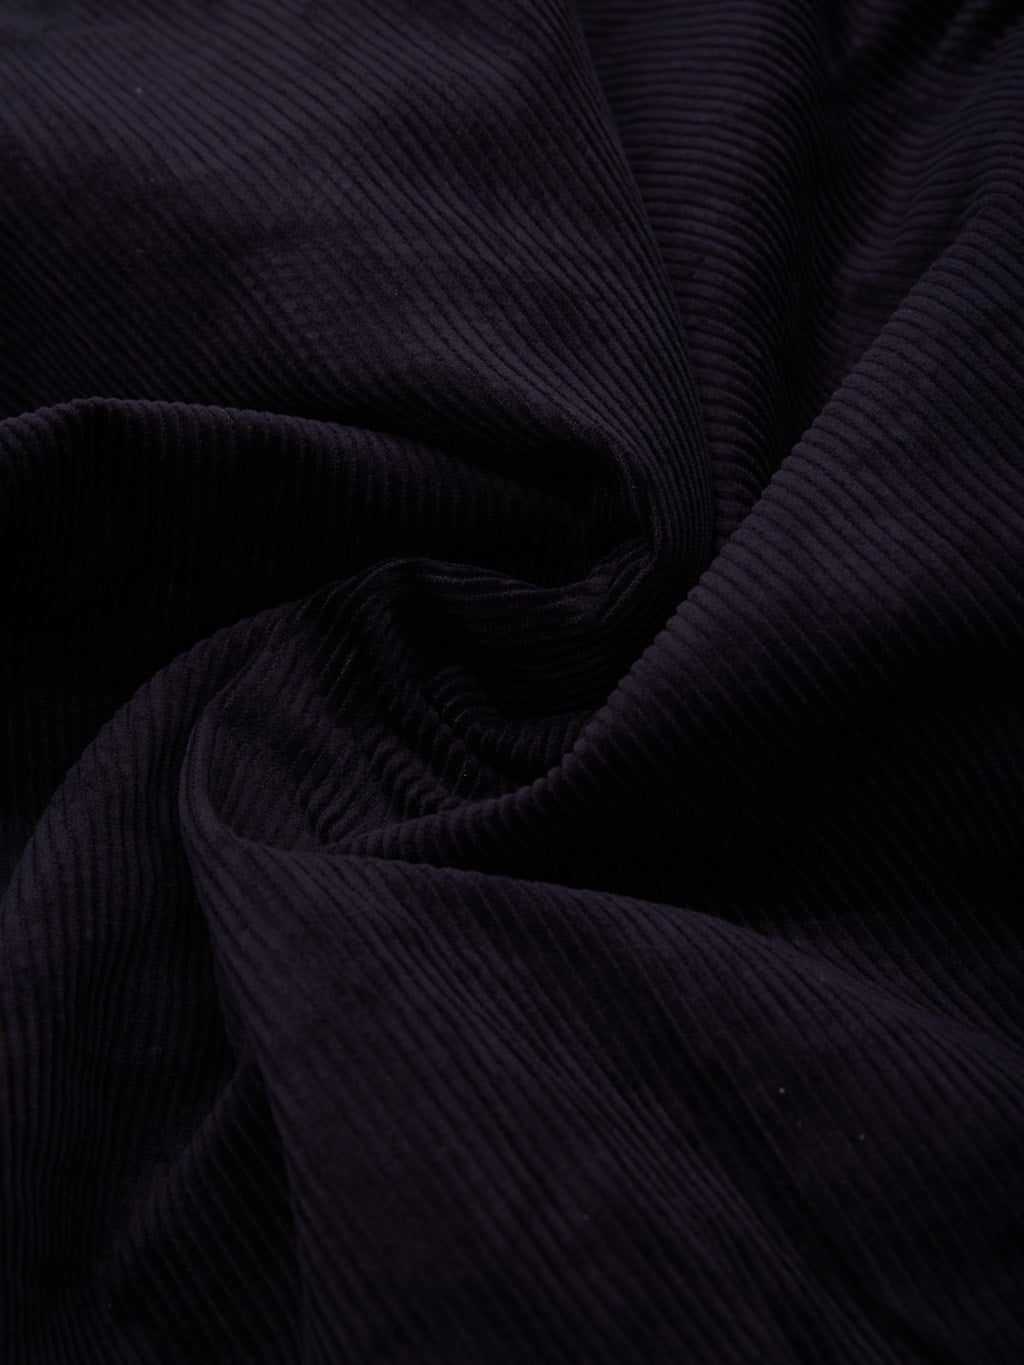 Tanuki Sazanami Corduroy natural indigo dyed Jacket  100 cotton fabric